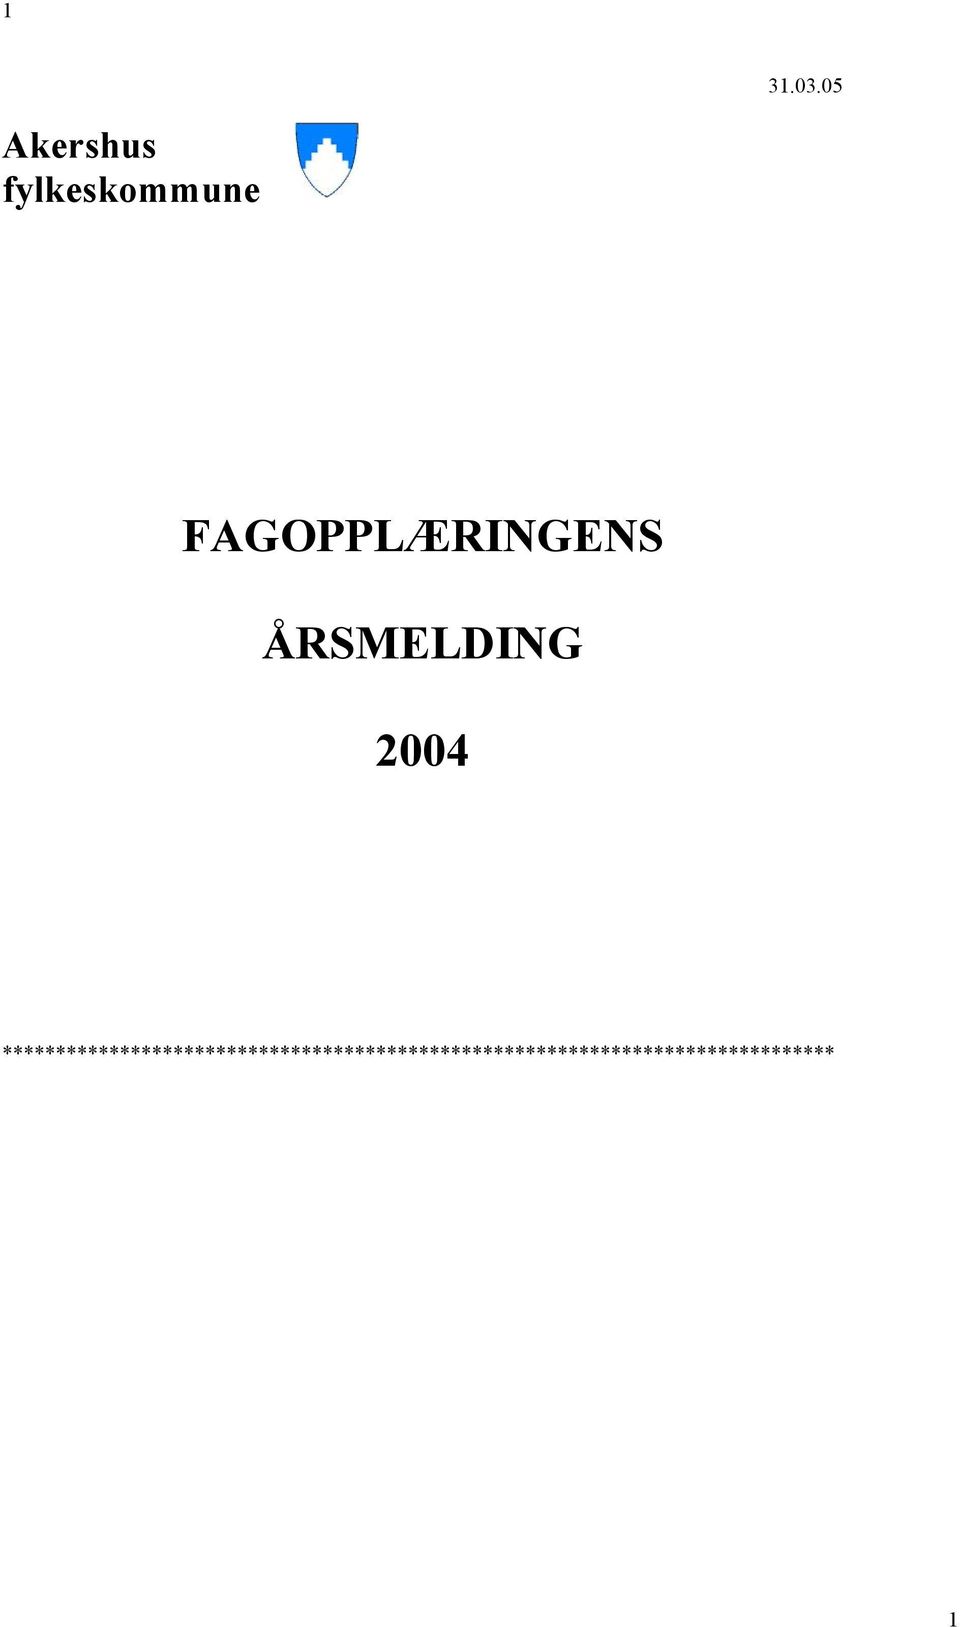 FAGOPPLÆRINGENS ÅRSMELDING 2004